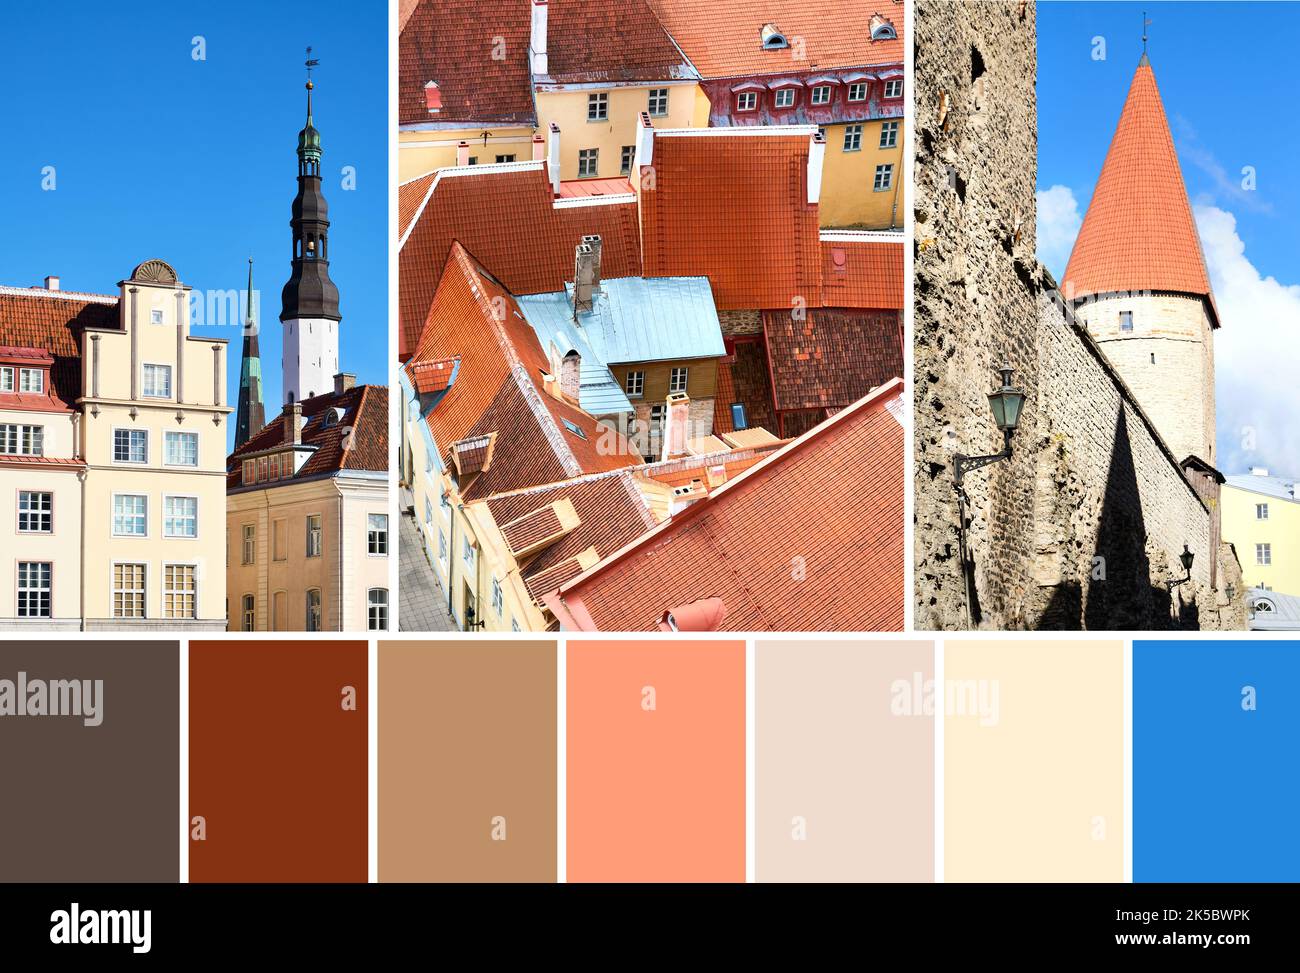 Palette de couleurs assorties d'images de la vieille ville de Tallinn en Estonie. Hôtel de ville, tours murales, façades historiques et toits de bâtiments anciens. Banque D'Images